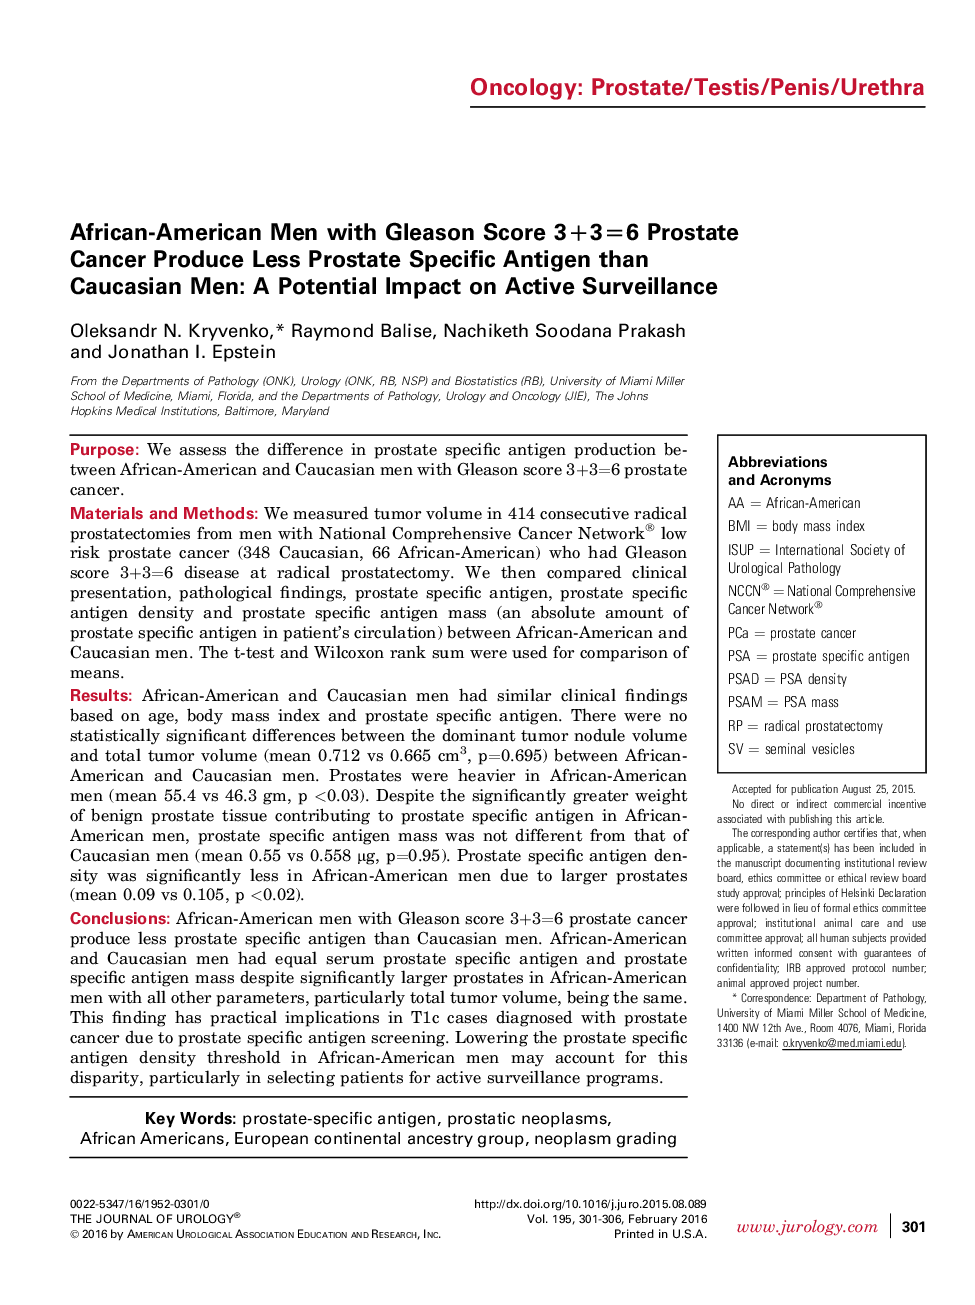 مردان آفریقایی-آمریکایی با امتیاز گلیسون 3 + 3 = 6 سرطان پروستات تولید آنتیژن خاص پروستات نسبت به مردان قفقازی را افزایش می دهد: یک تاثیر بالقوه بر نظارت فعال 